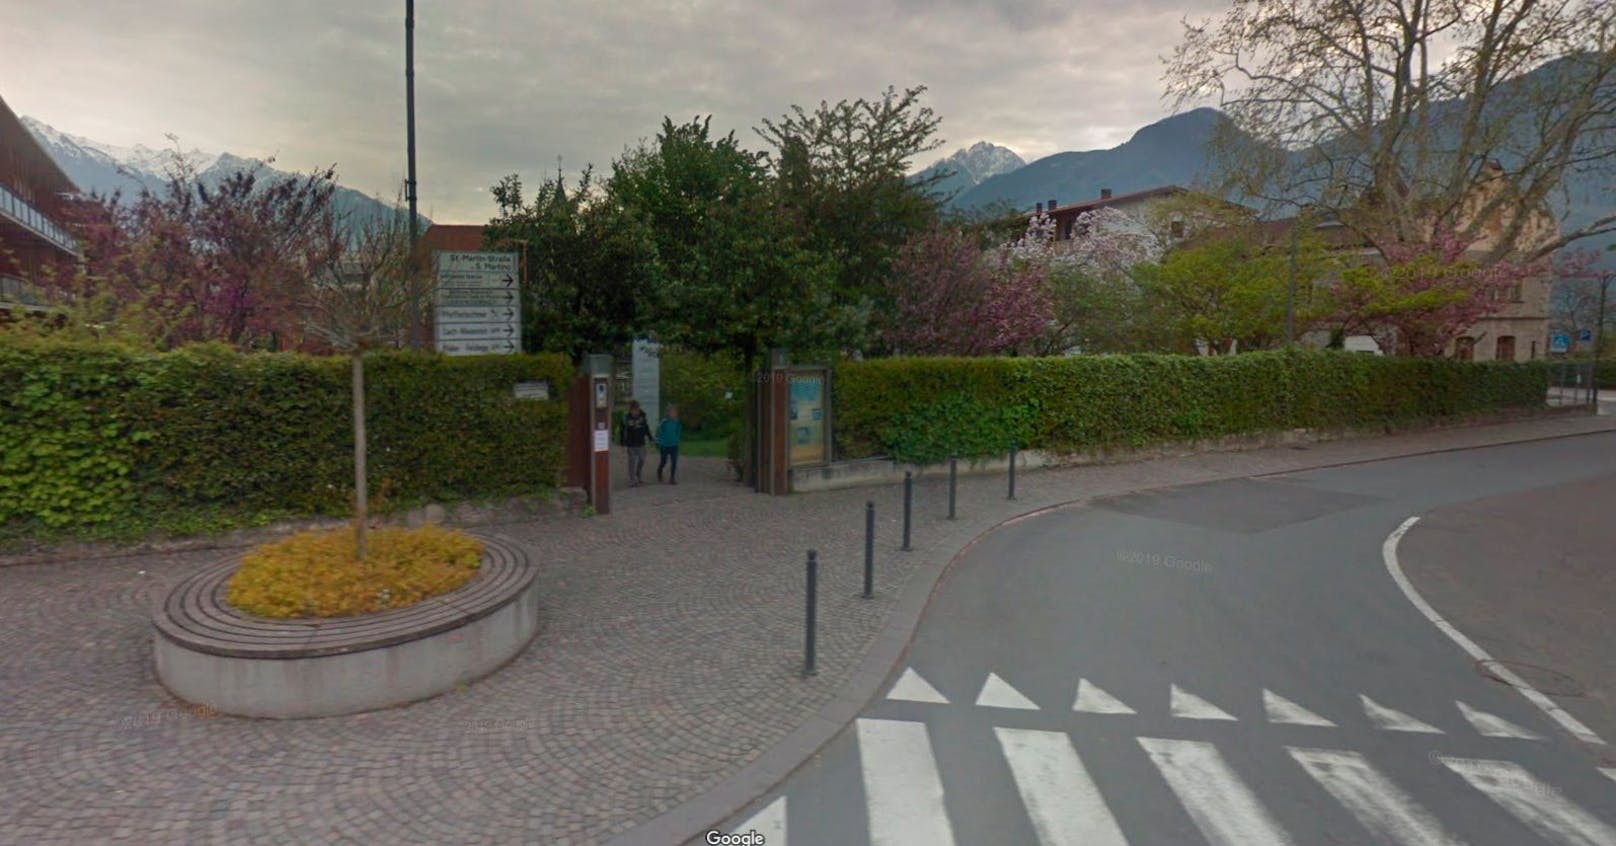 Die Bluttat geschah in der Parkanlage eines Seniorenwohnheims in Lana, Südtirol.